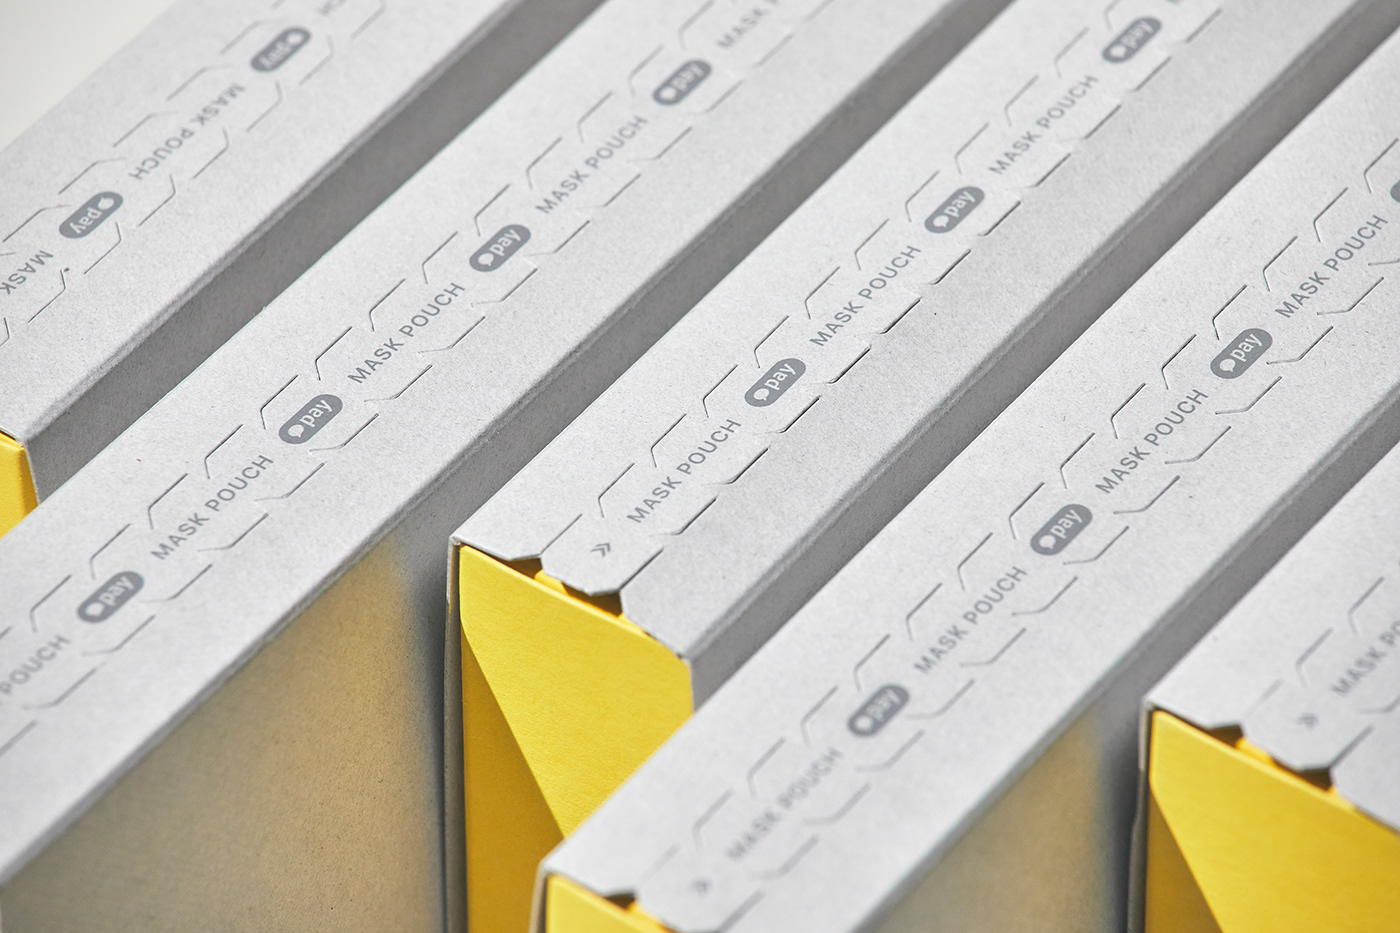 brand identity branding  design employee goods graphic kakaopay package yellow